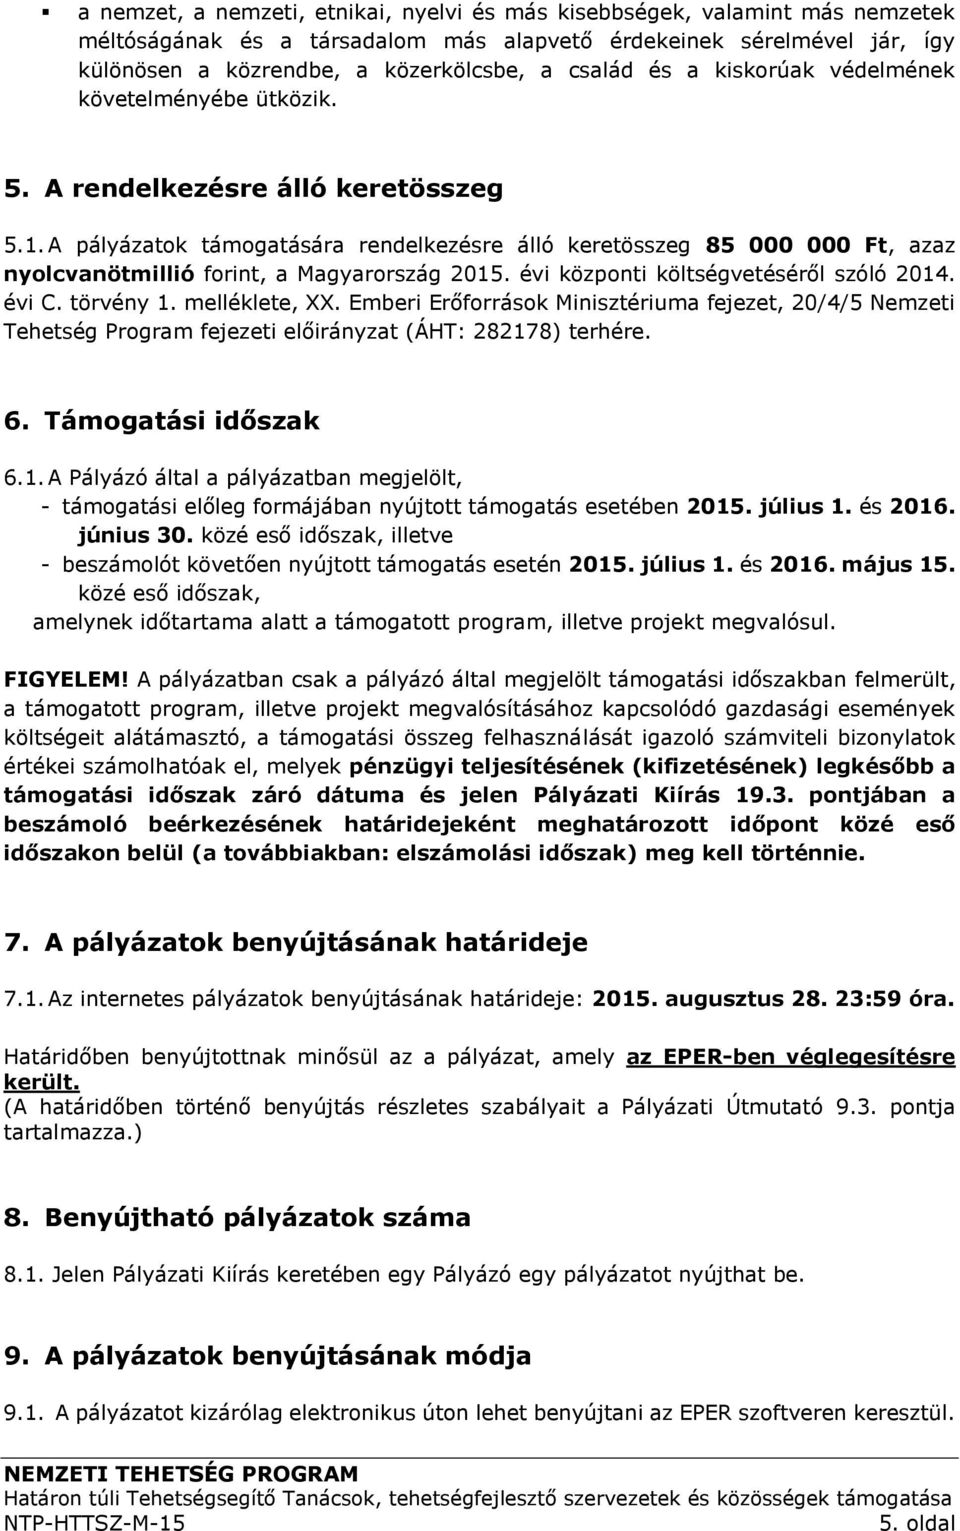 A pályázatok támogatására rendelkezésre álló keretösszeg 85 000 000 Ft, azaz nyolcvanötmillió forint, a Magyarország 2015. évi központi költségvetéséről szóló 2014. évi C. törvény 1. melléklete, XX.